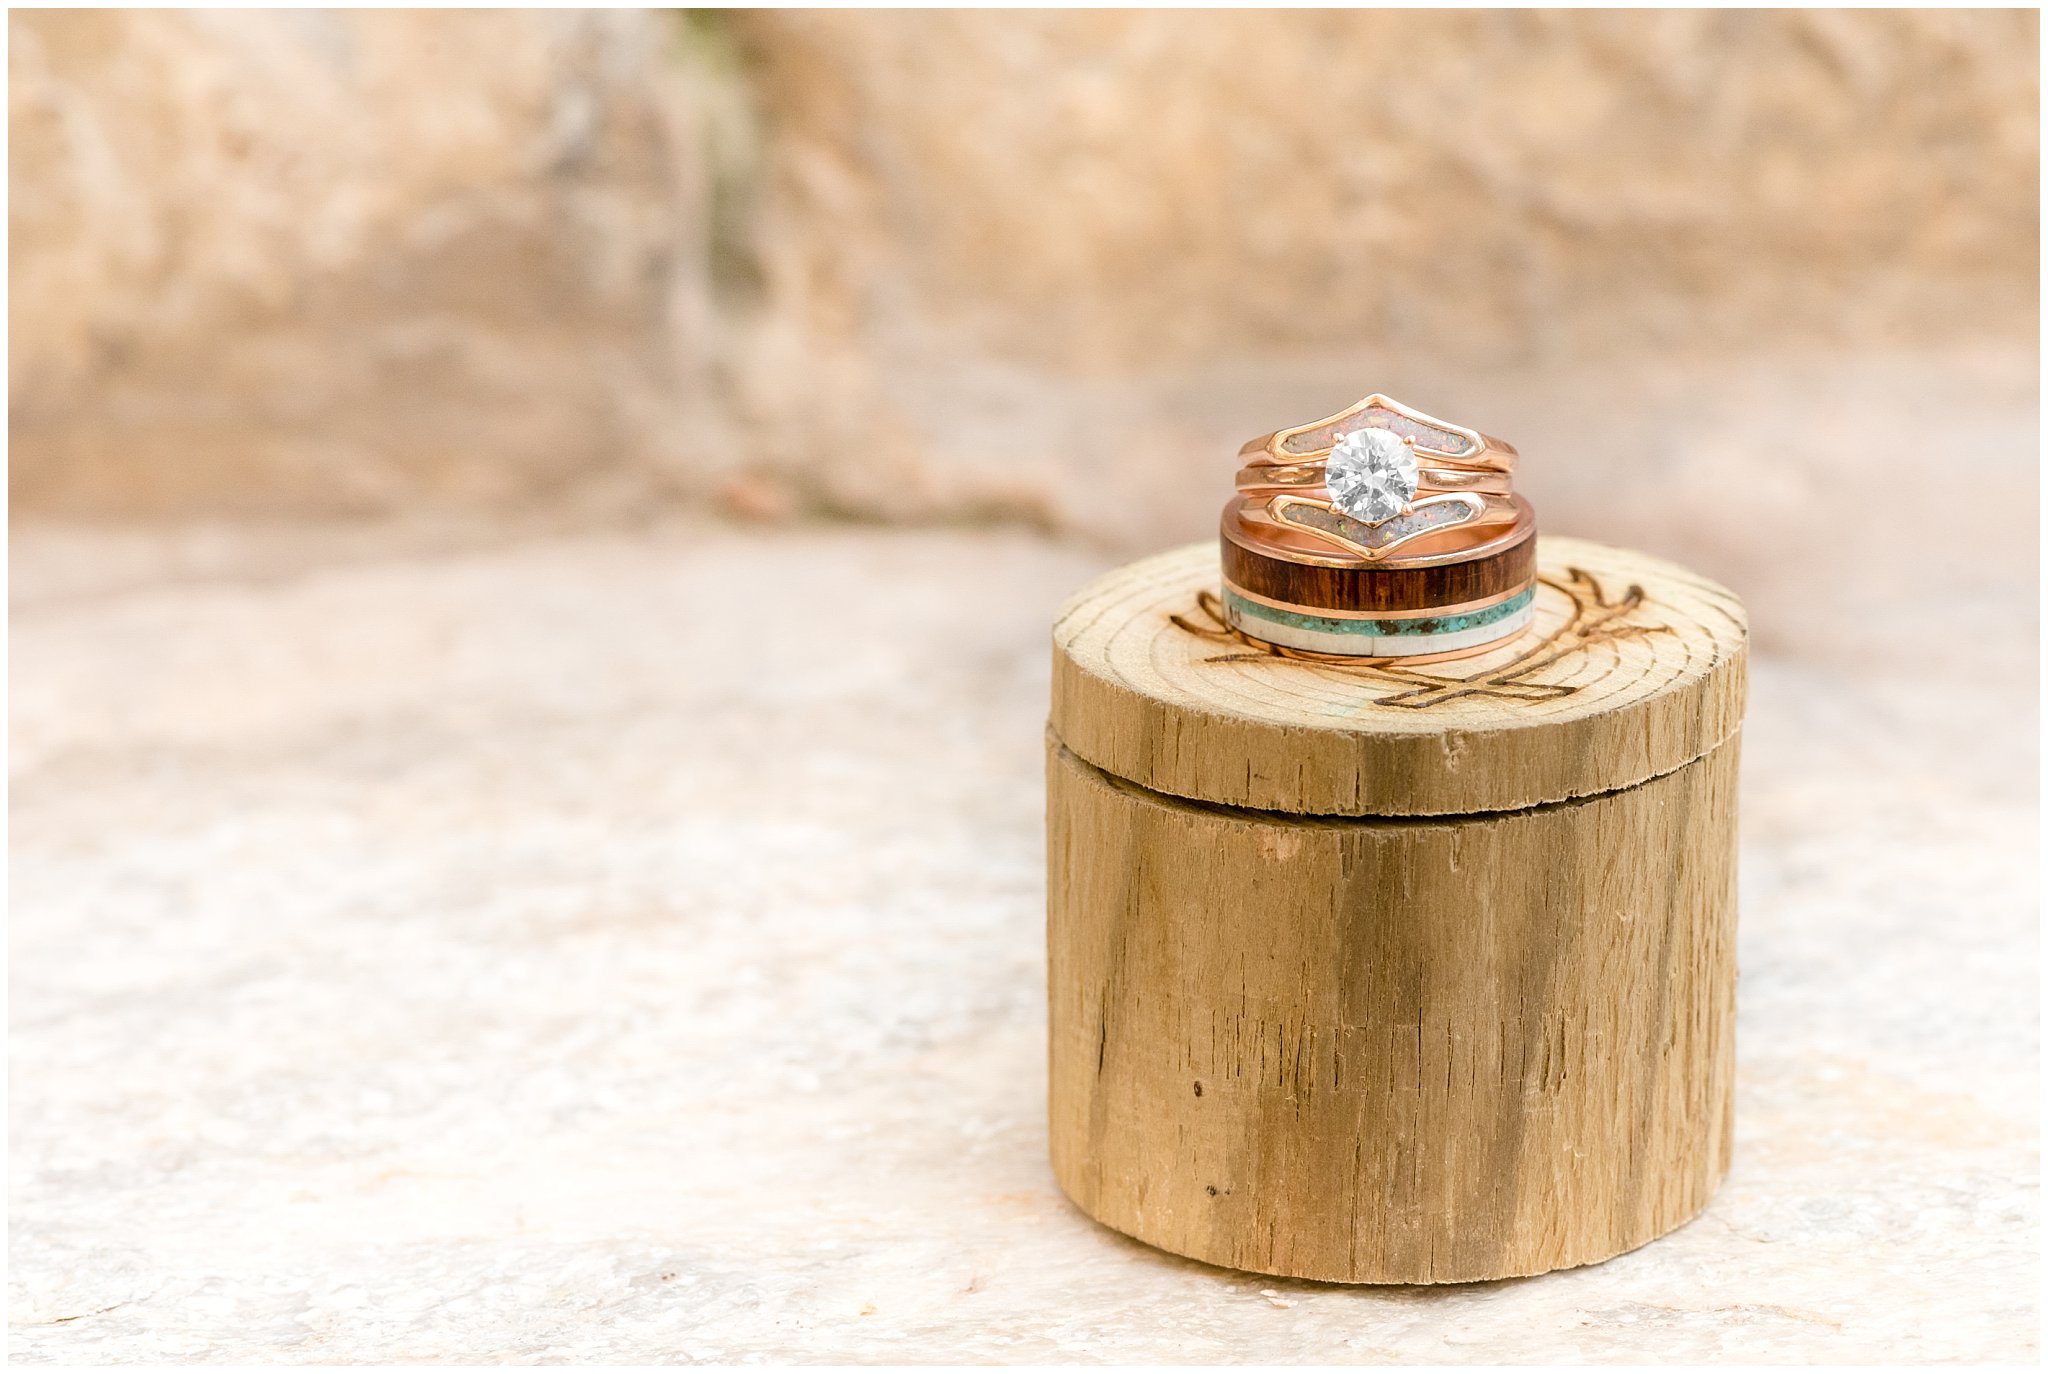 Staghead Designs custom wedding rings | Elegant Fall wedding | Wadley Farms Utah | Jessie and Dallin